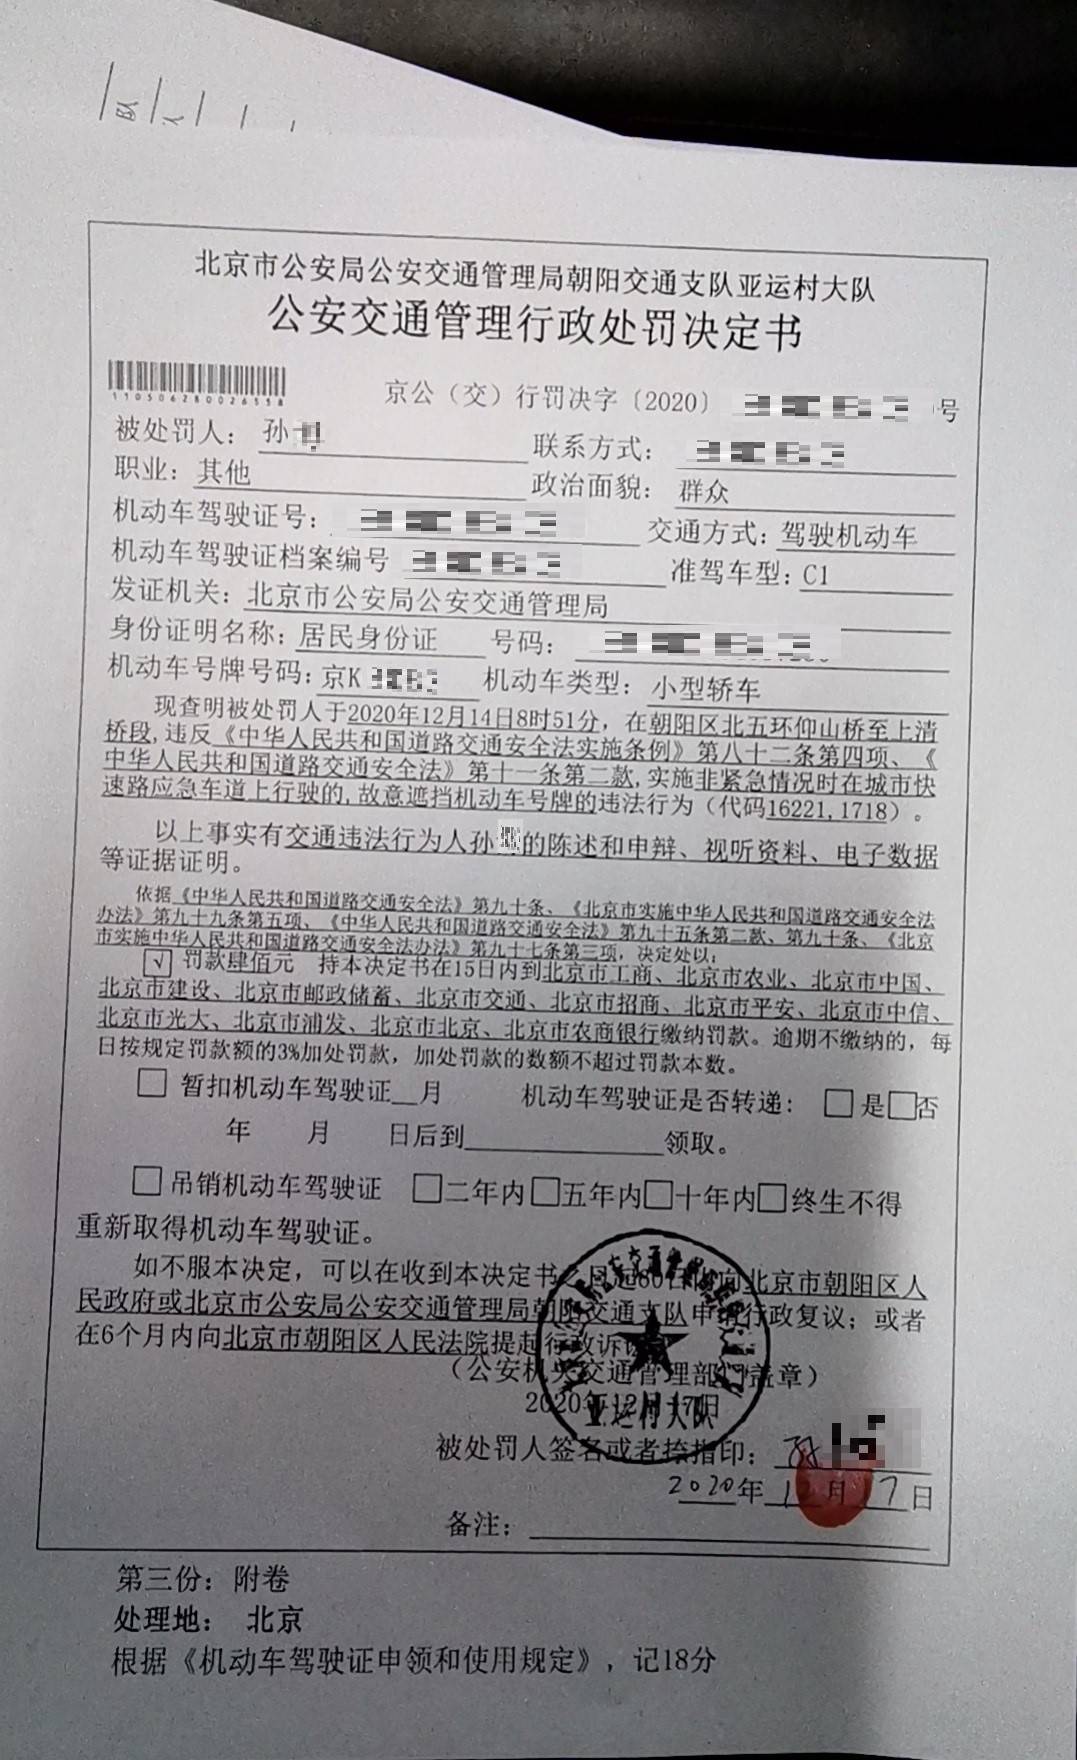 北京交警:本周,您的举报已查处